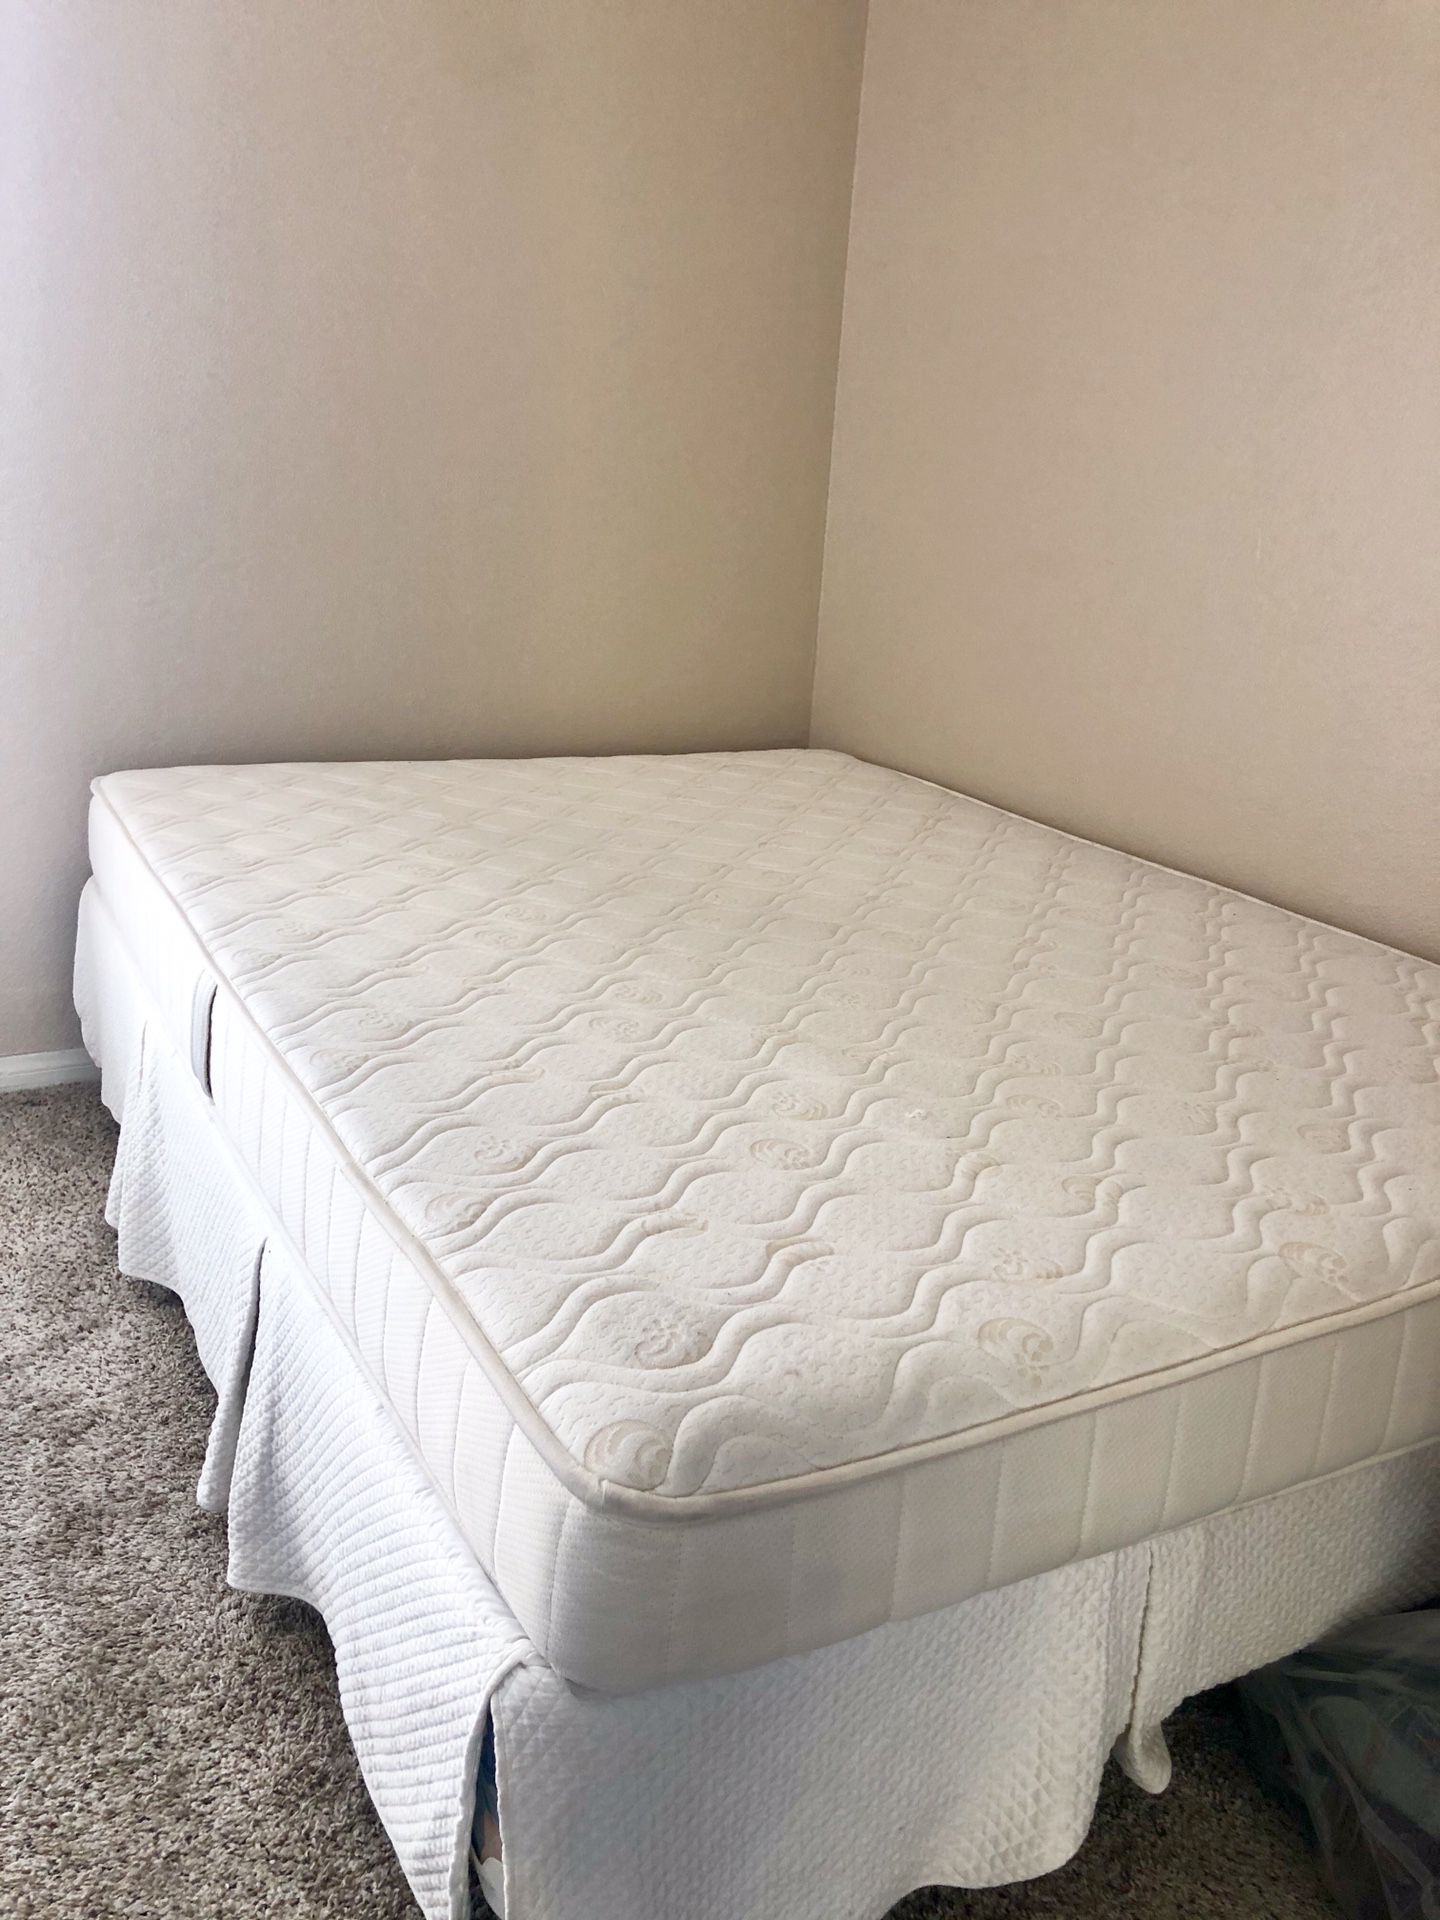 Full mattress, frame, box spring, & bed skirt